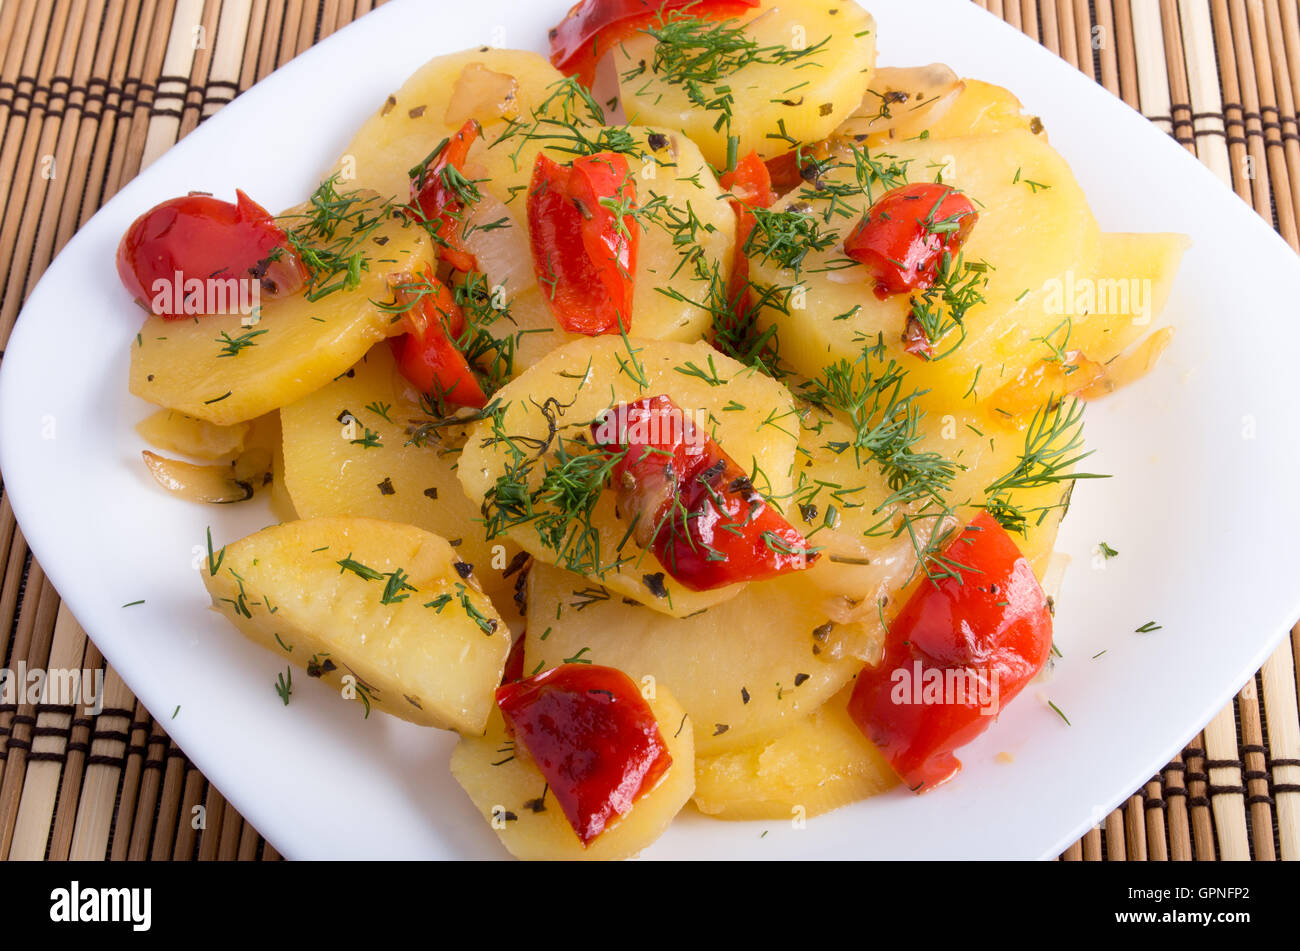 Plat végétarien avec des légumes biologiques - tranches de pommes de terre cuites et les condiments végétaux sur un fond de bois Banque D'Images